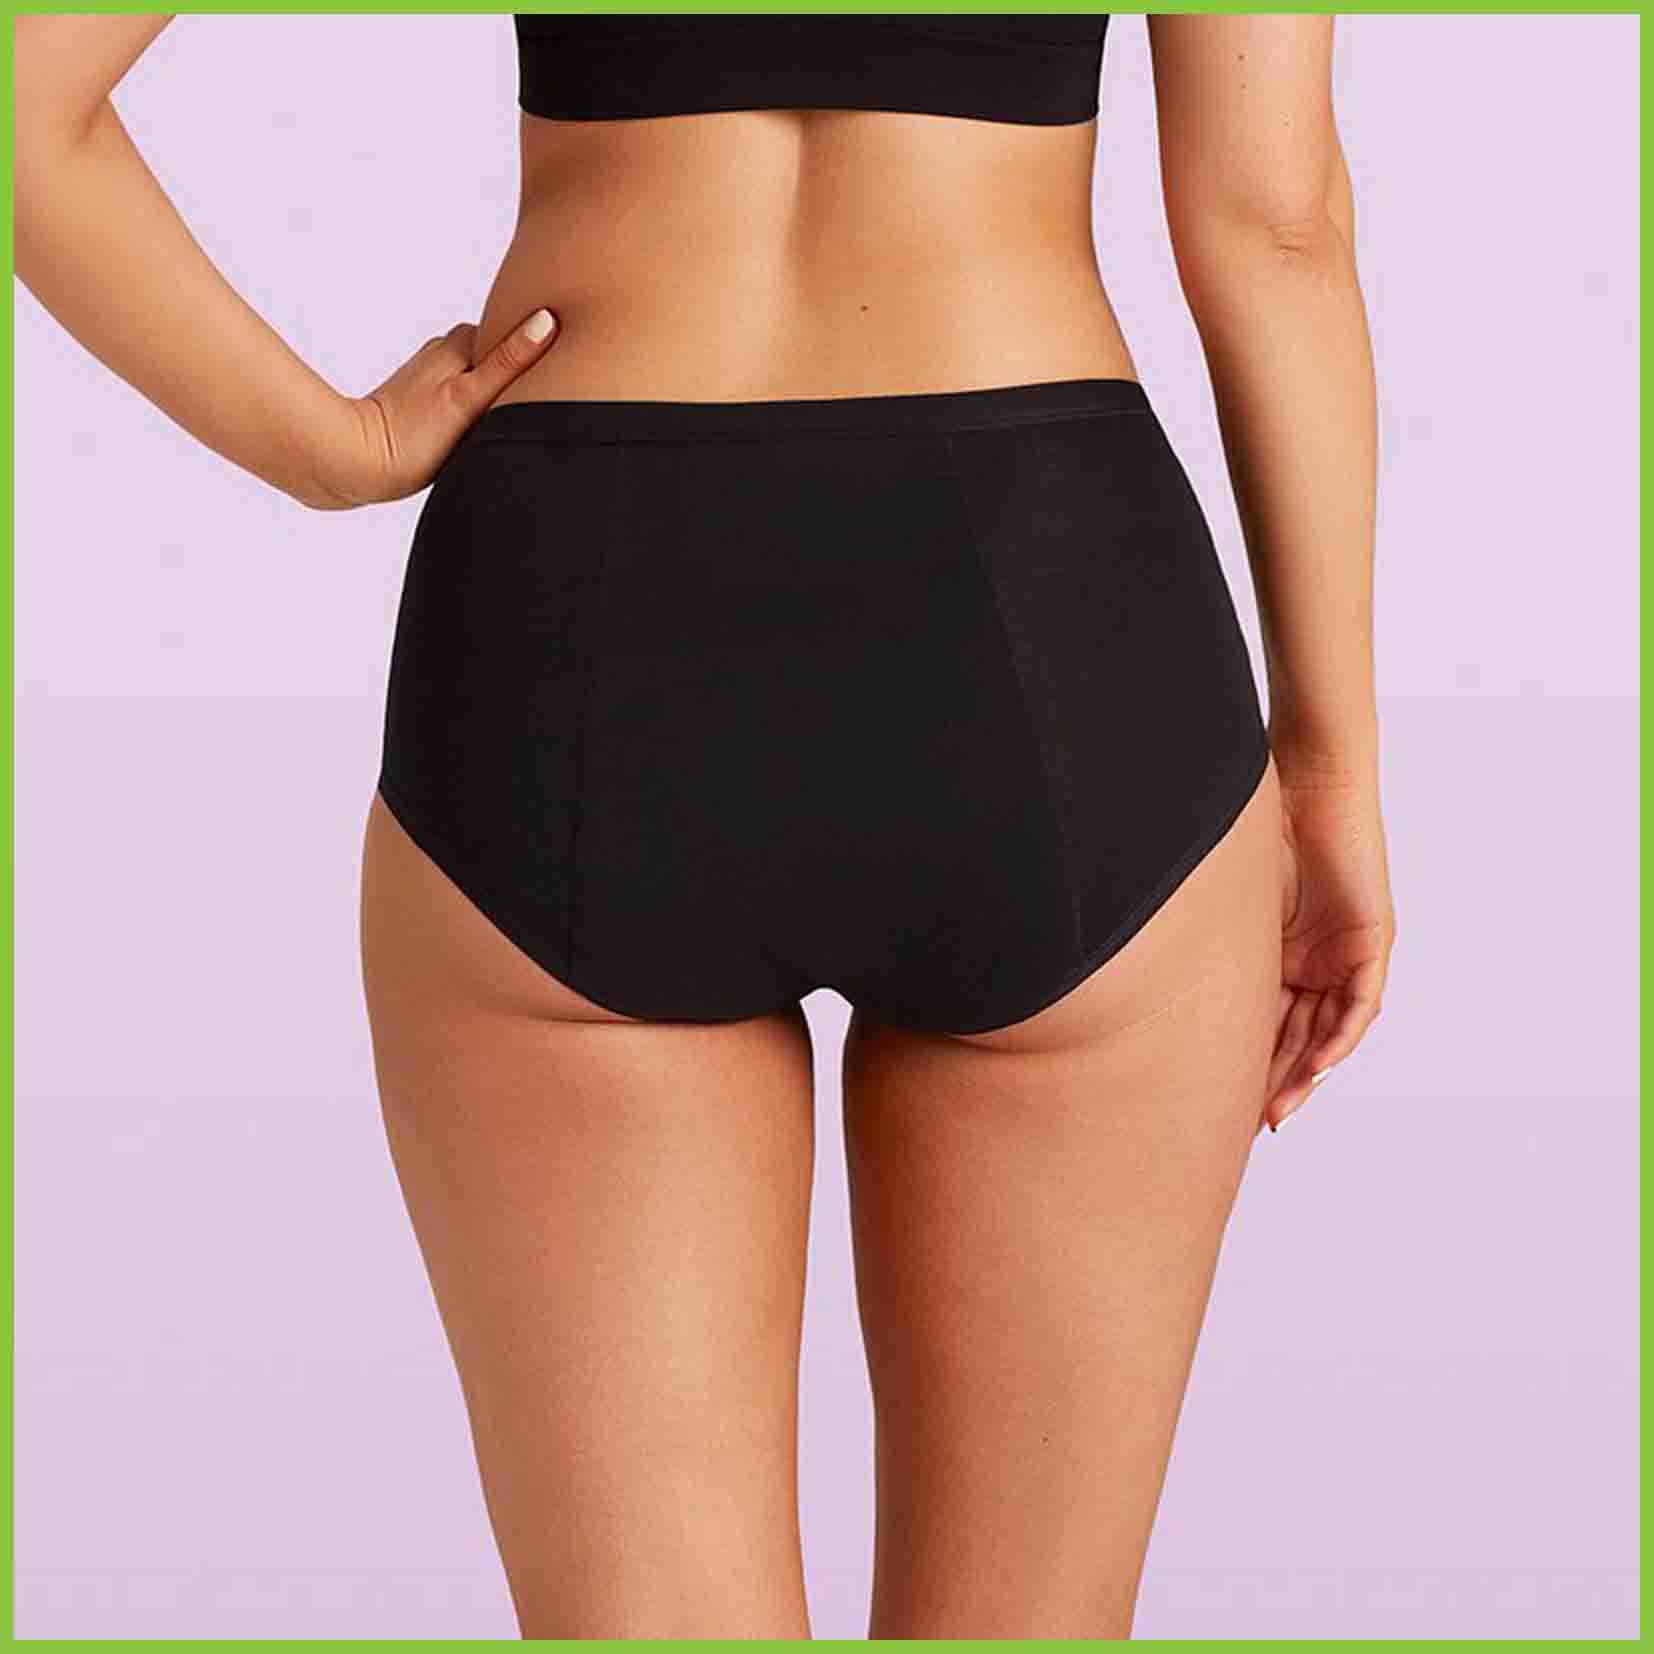 Woolworths Essentials Underwear Women's Full Brief Size 20-22 5